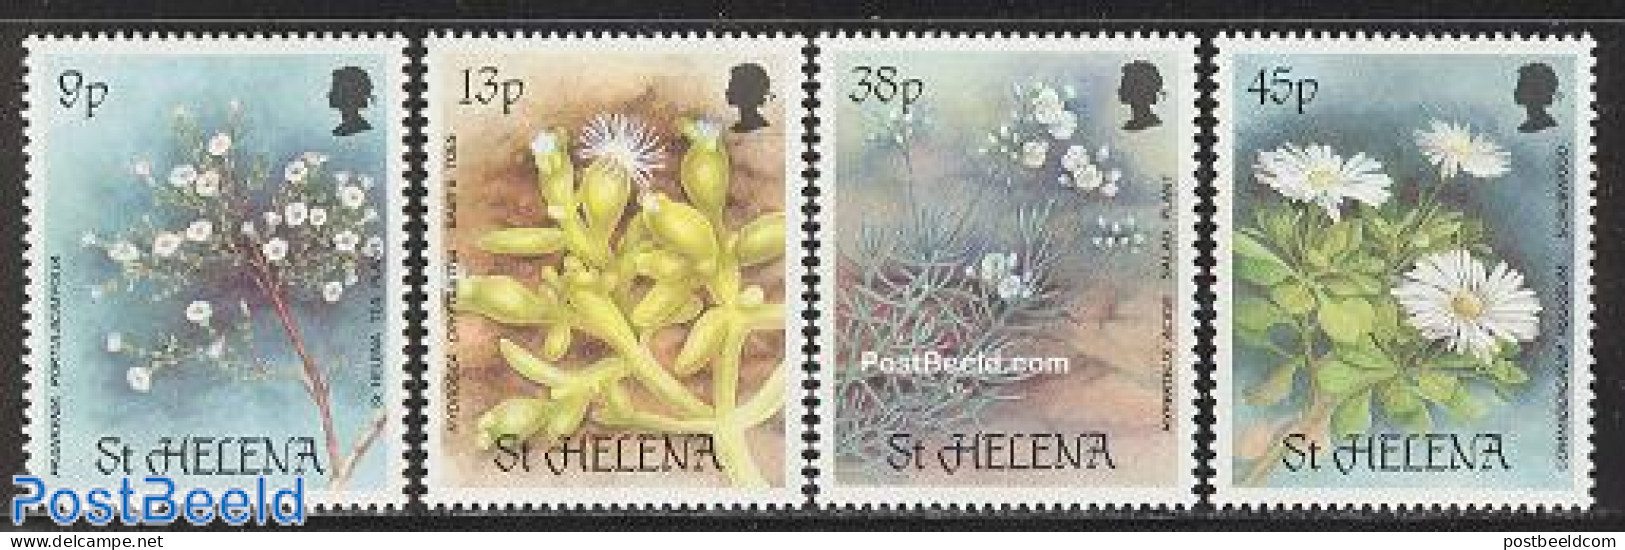 Saint Helena 1987 Rare Plants 4v, Mint NH, Nature - Flowers & Plants - Saint Helena Island